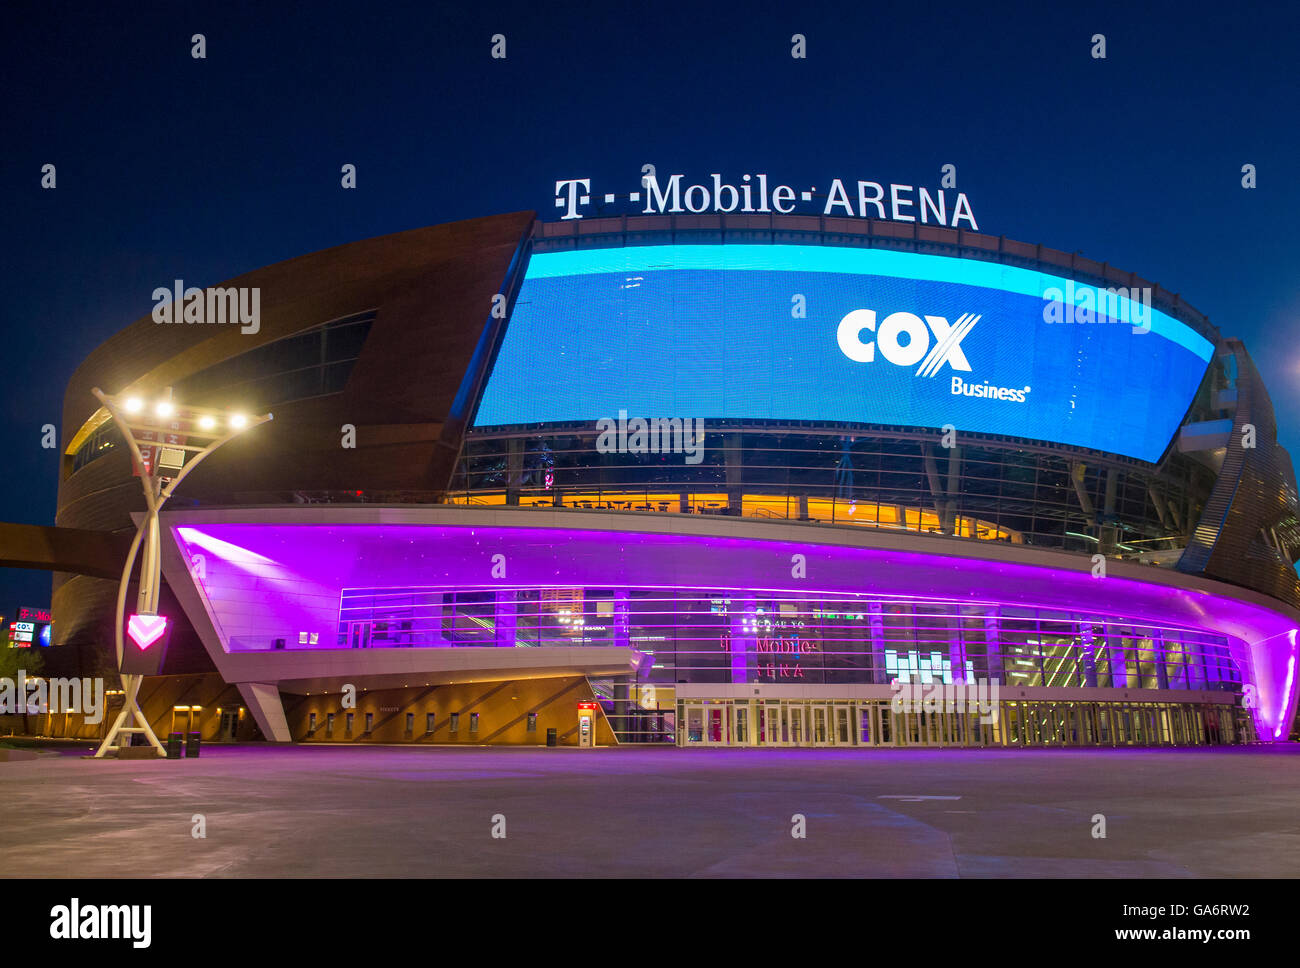 2,416 Las Vegas T Mobile Arena Images, Stock Photos & Vectors